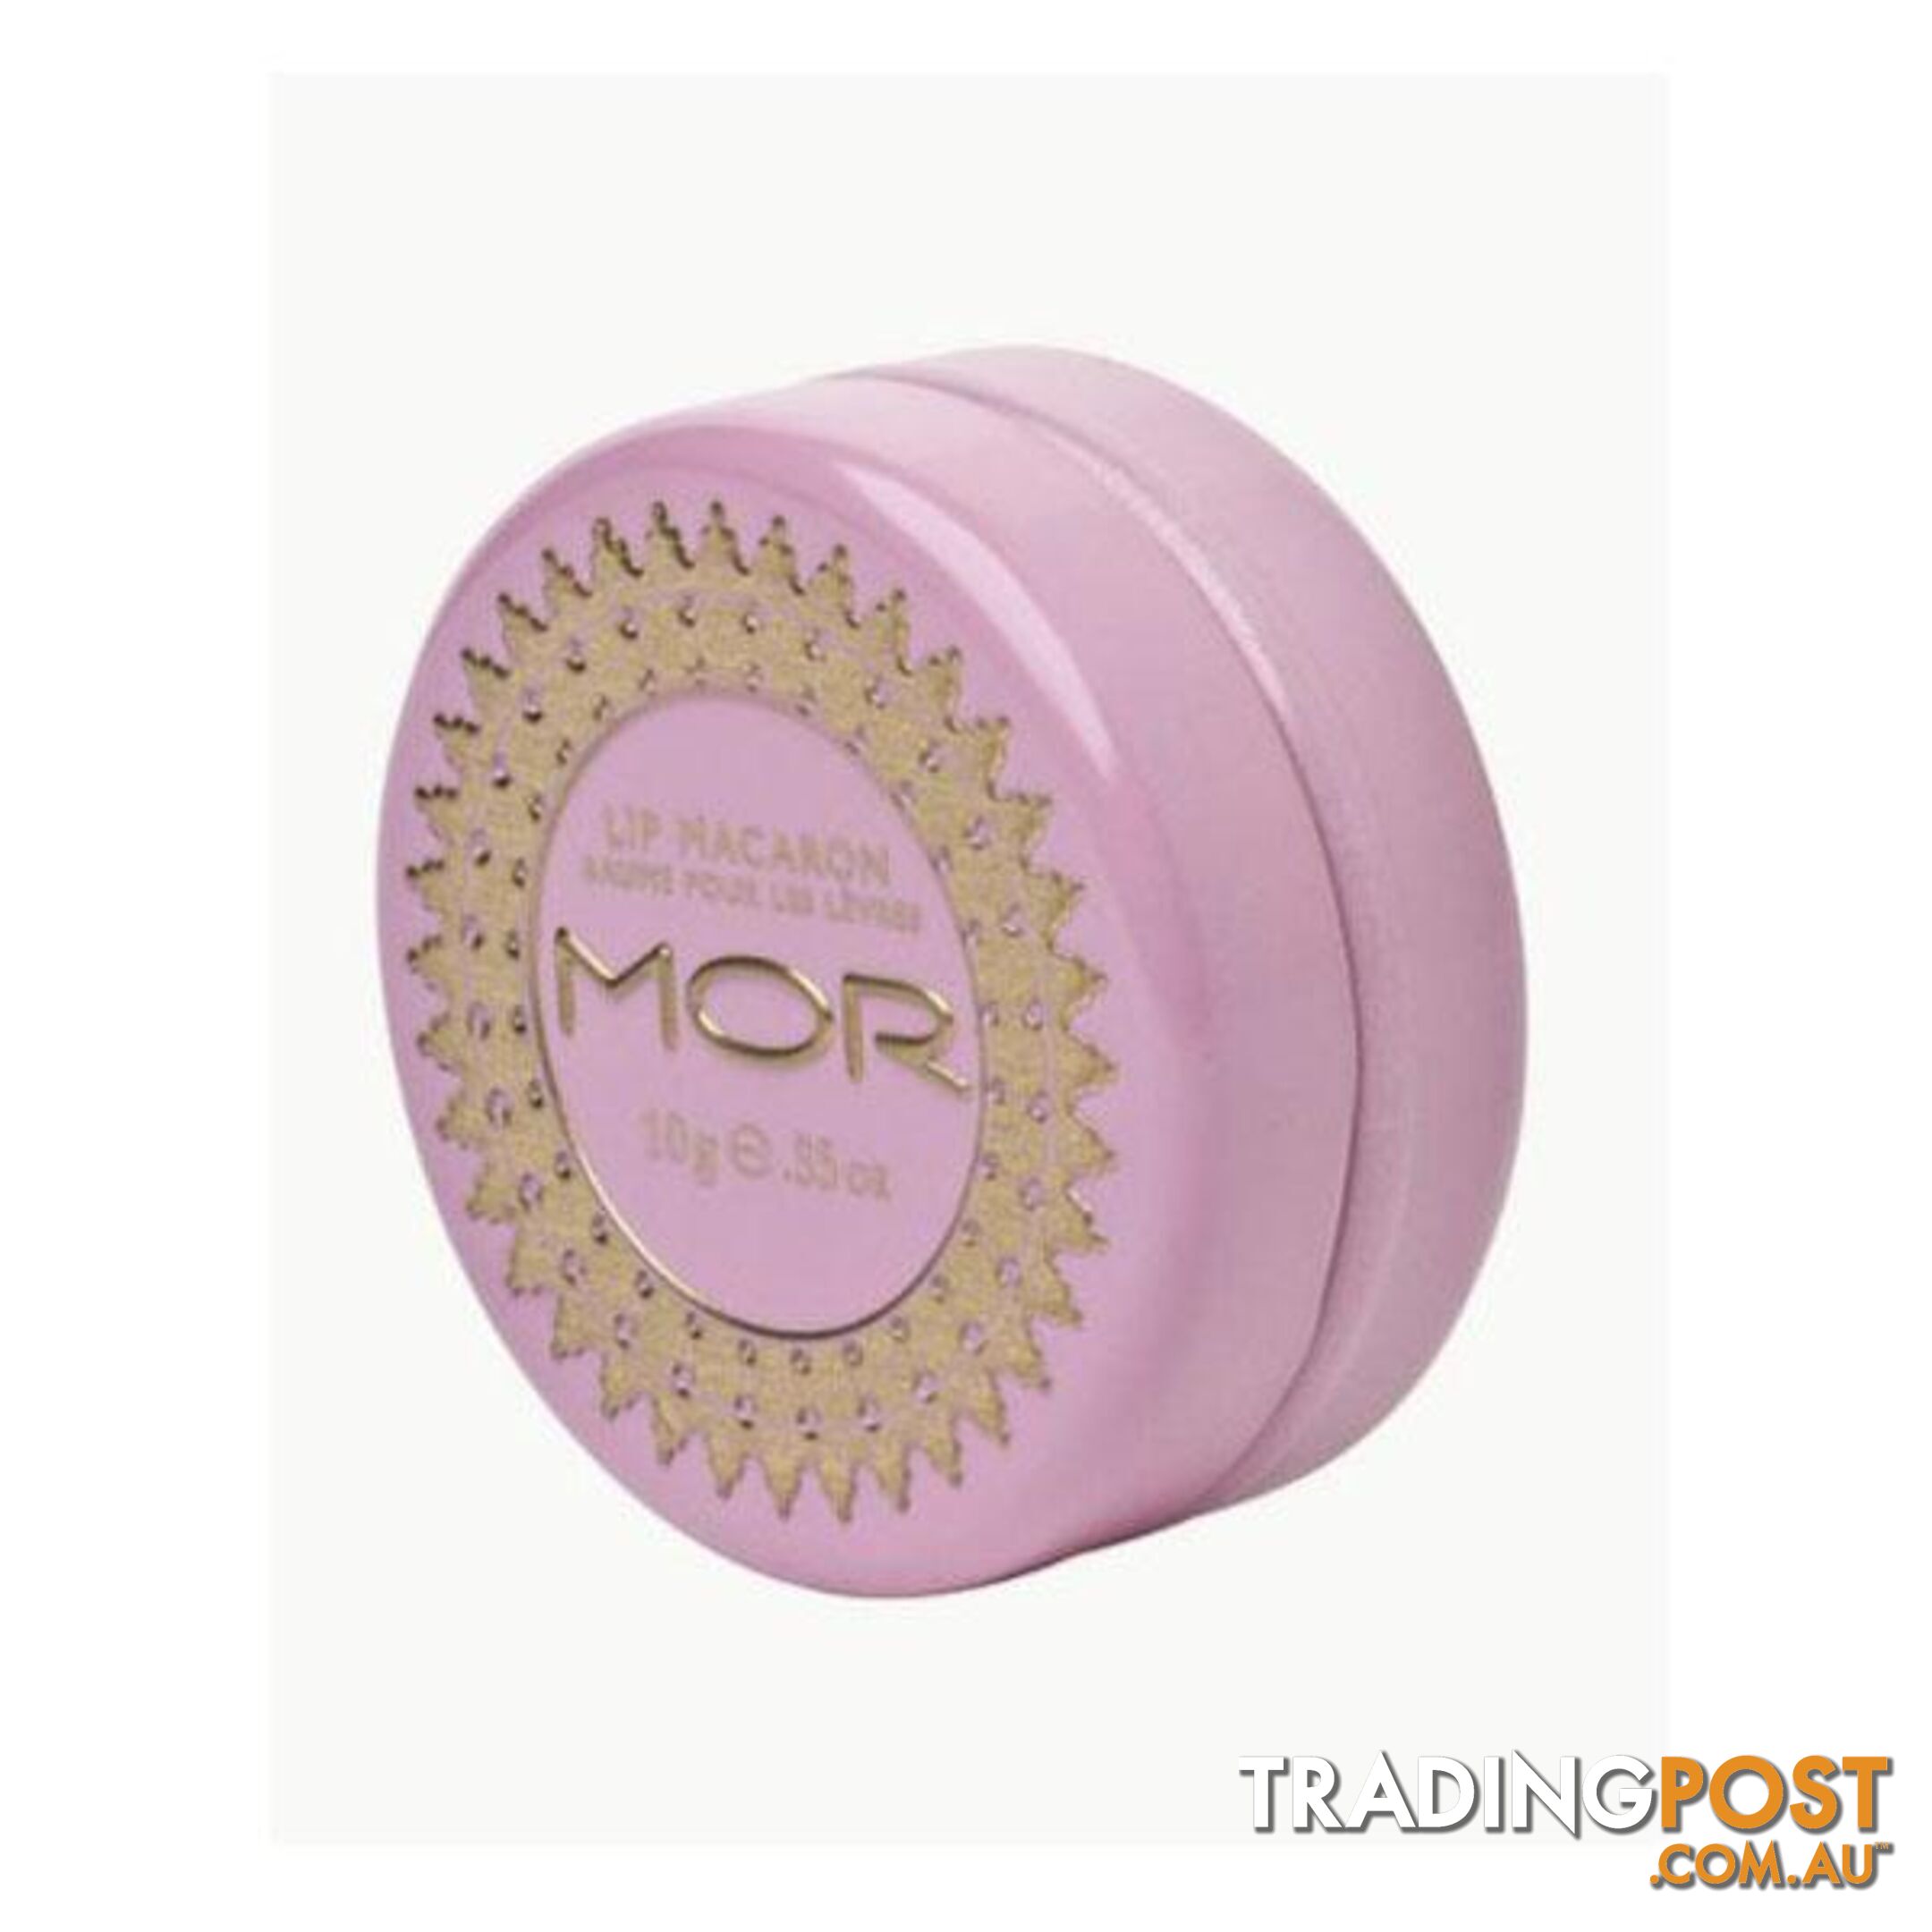 Mor Lip Macaron Boxed10G Lychee Flower - MOR - 9476062138820